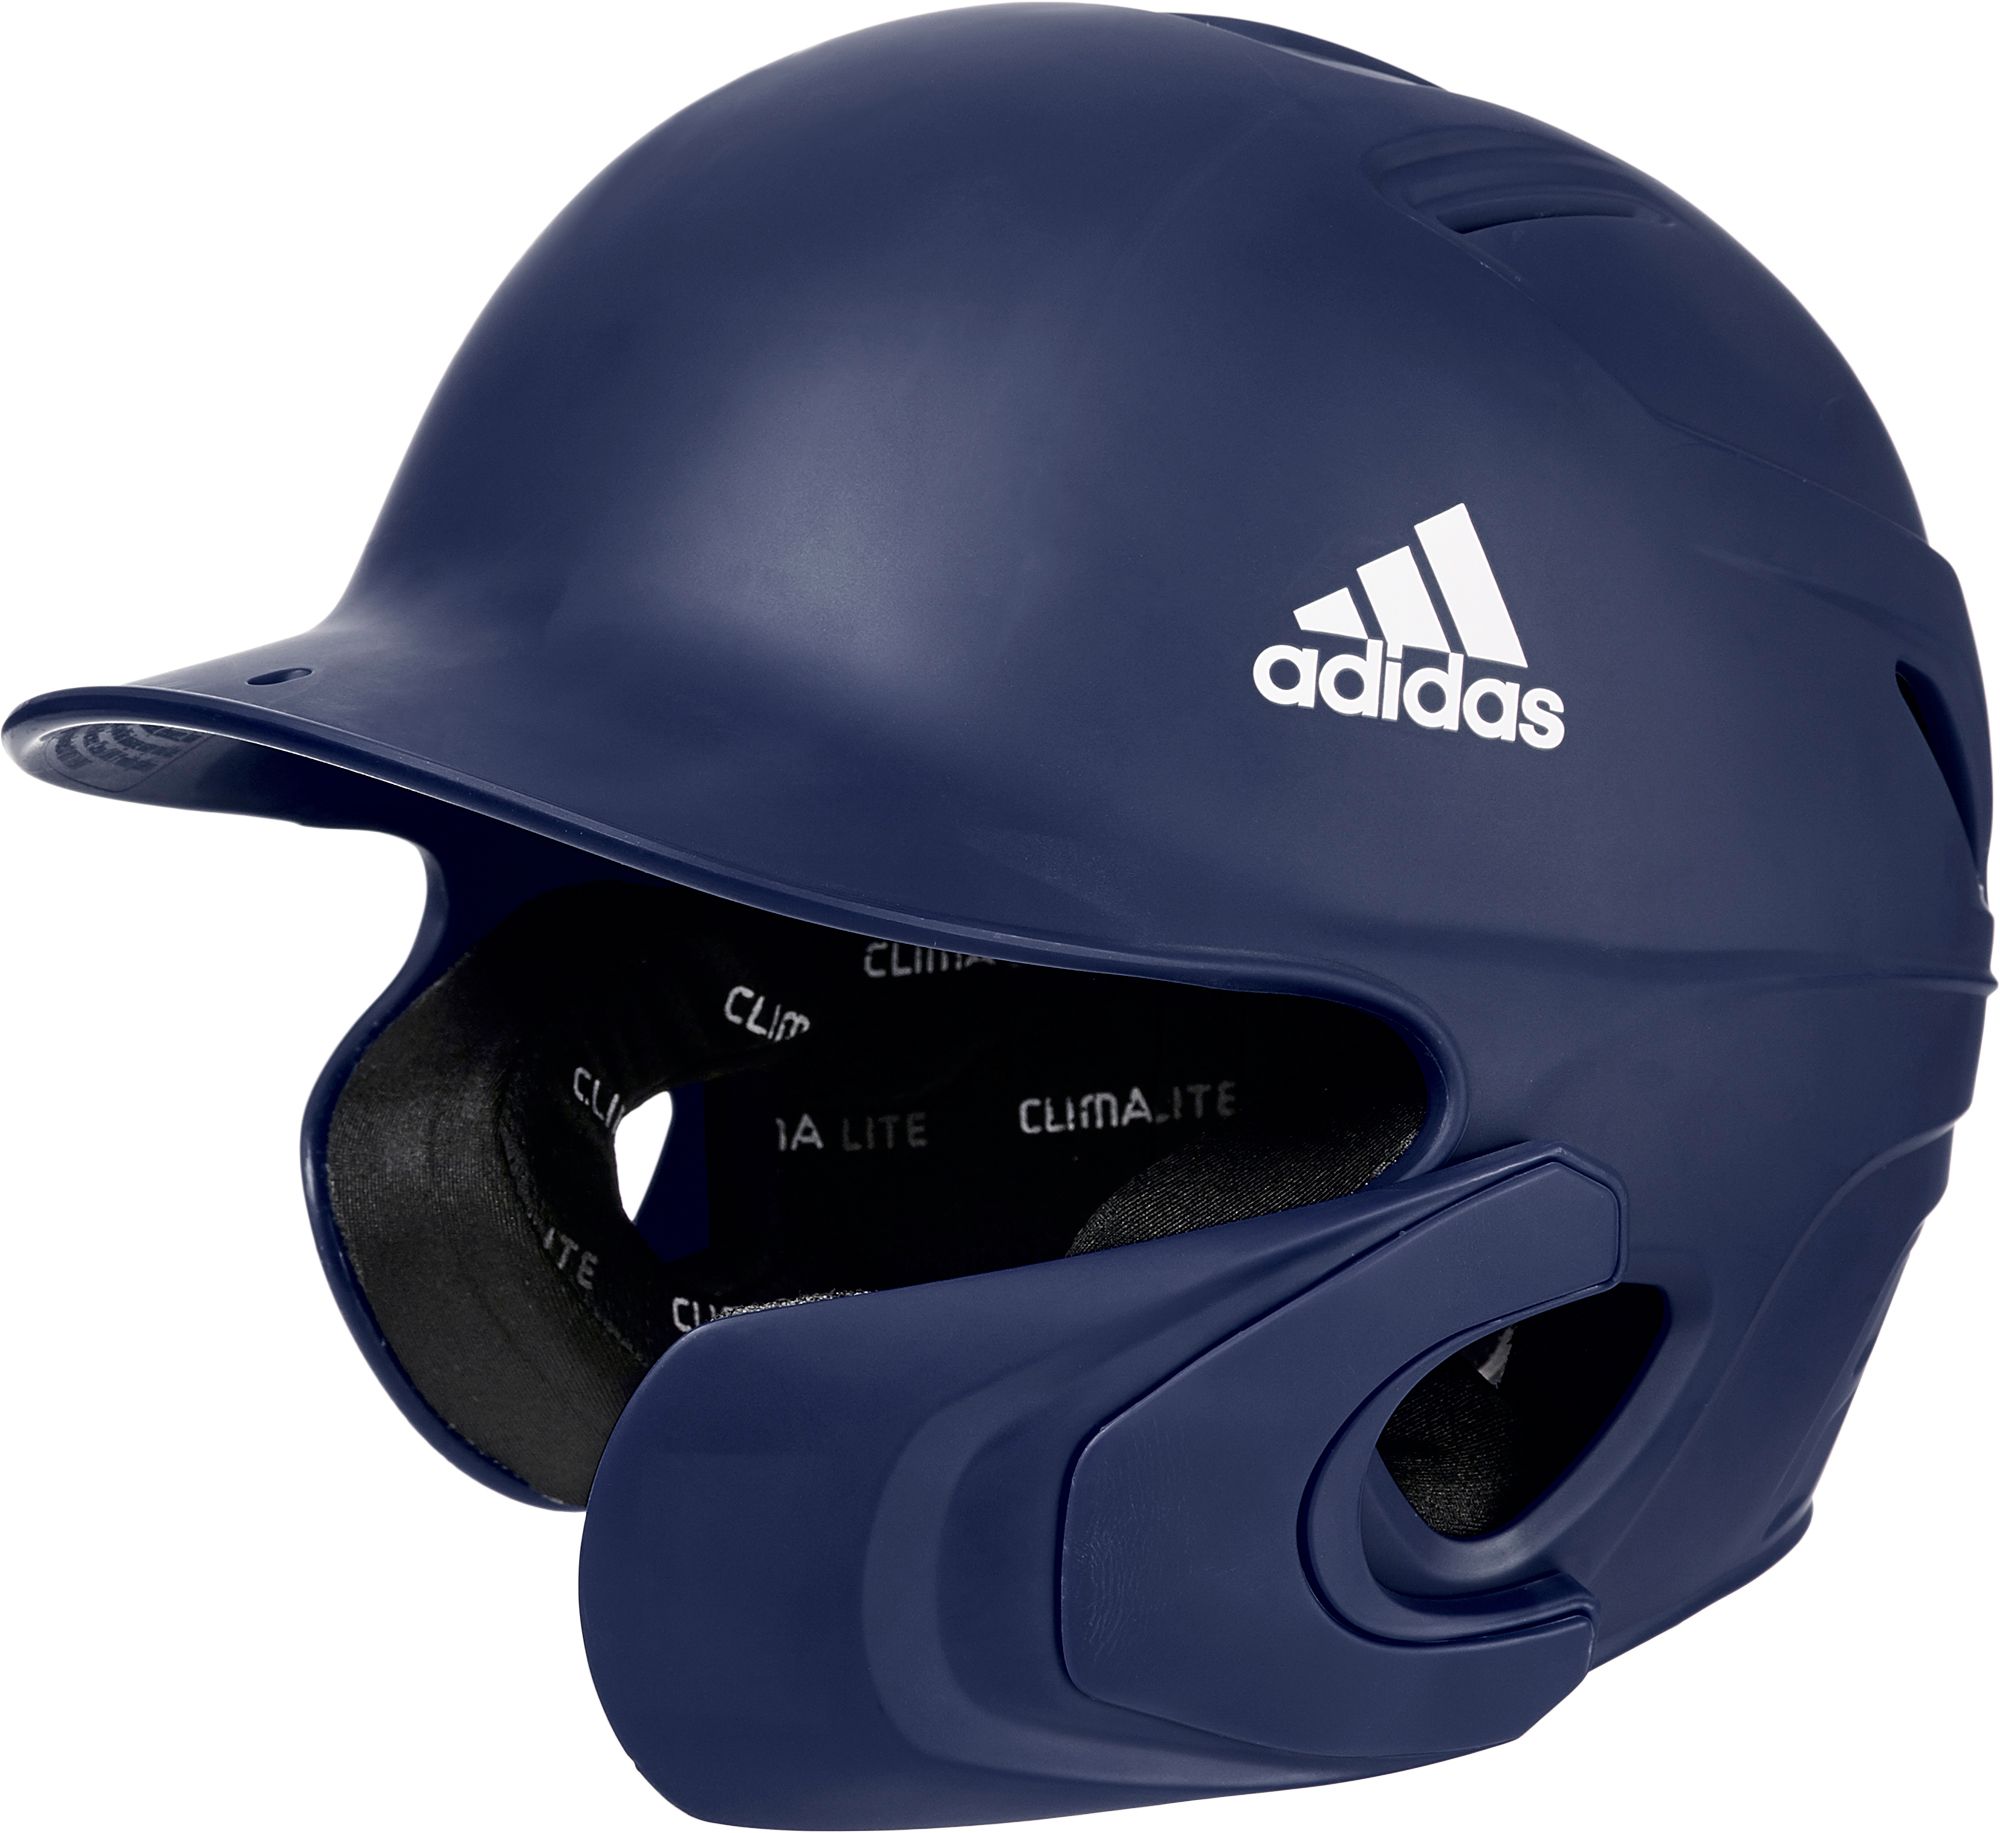 adidas baseball helmet